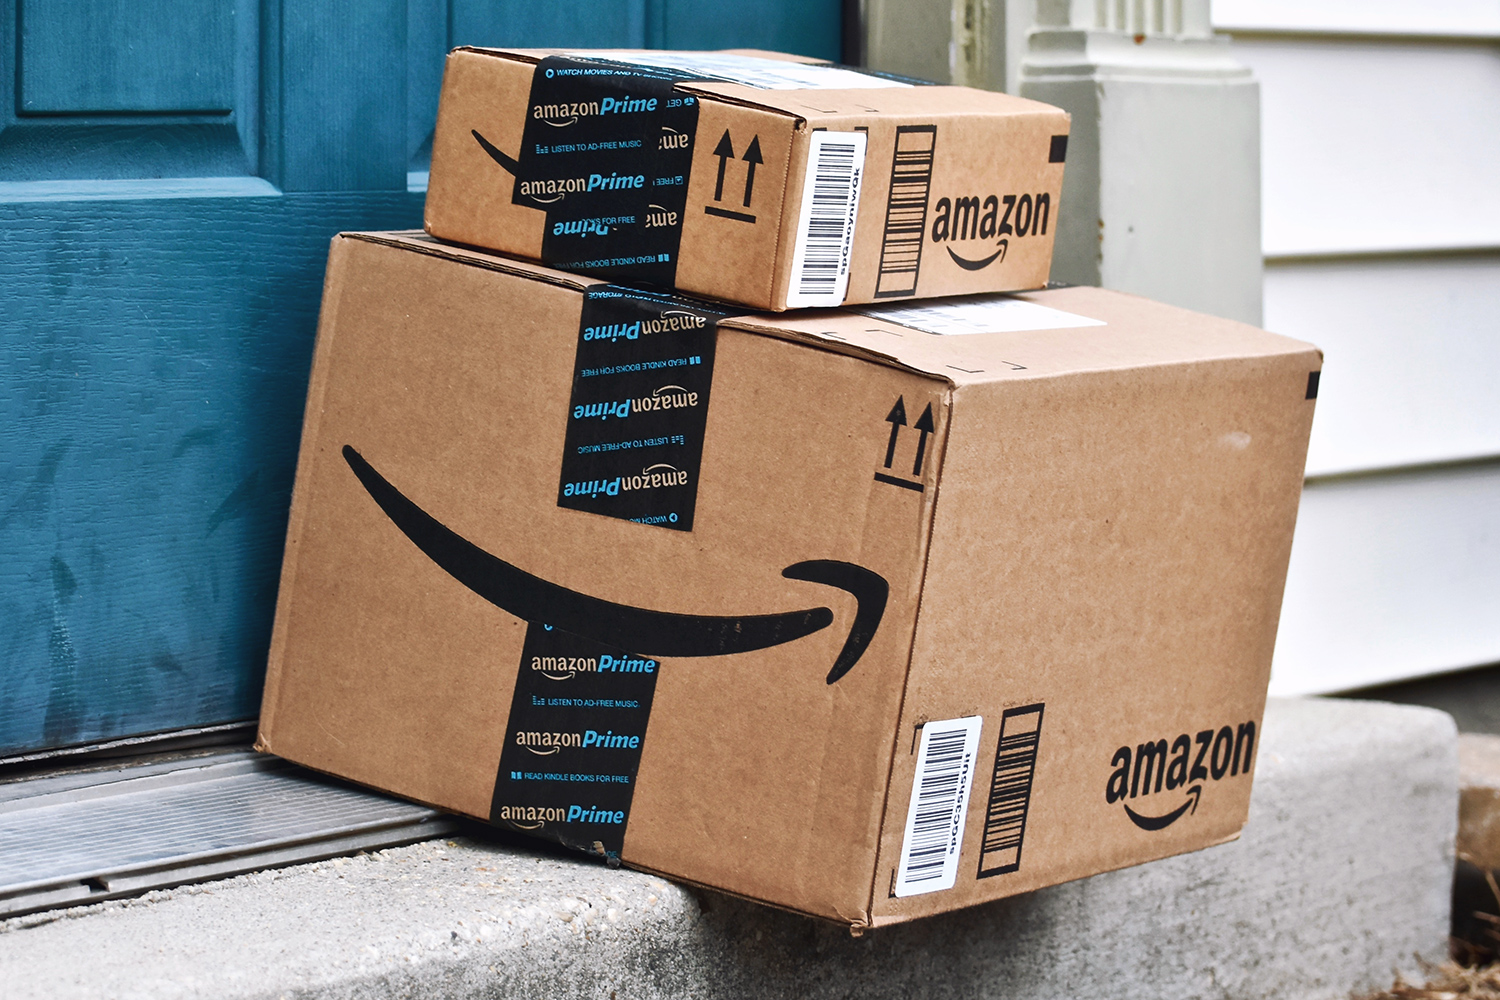 Con Amazon Prime tienes tus productos en casa sin gastos de envío y en dos días como máximo